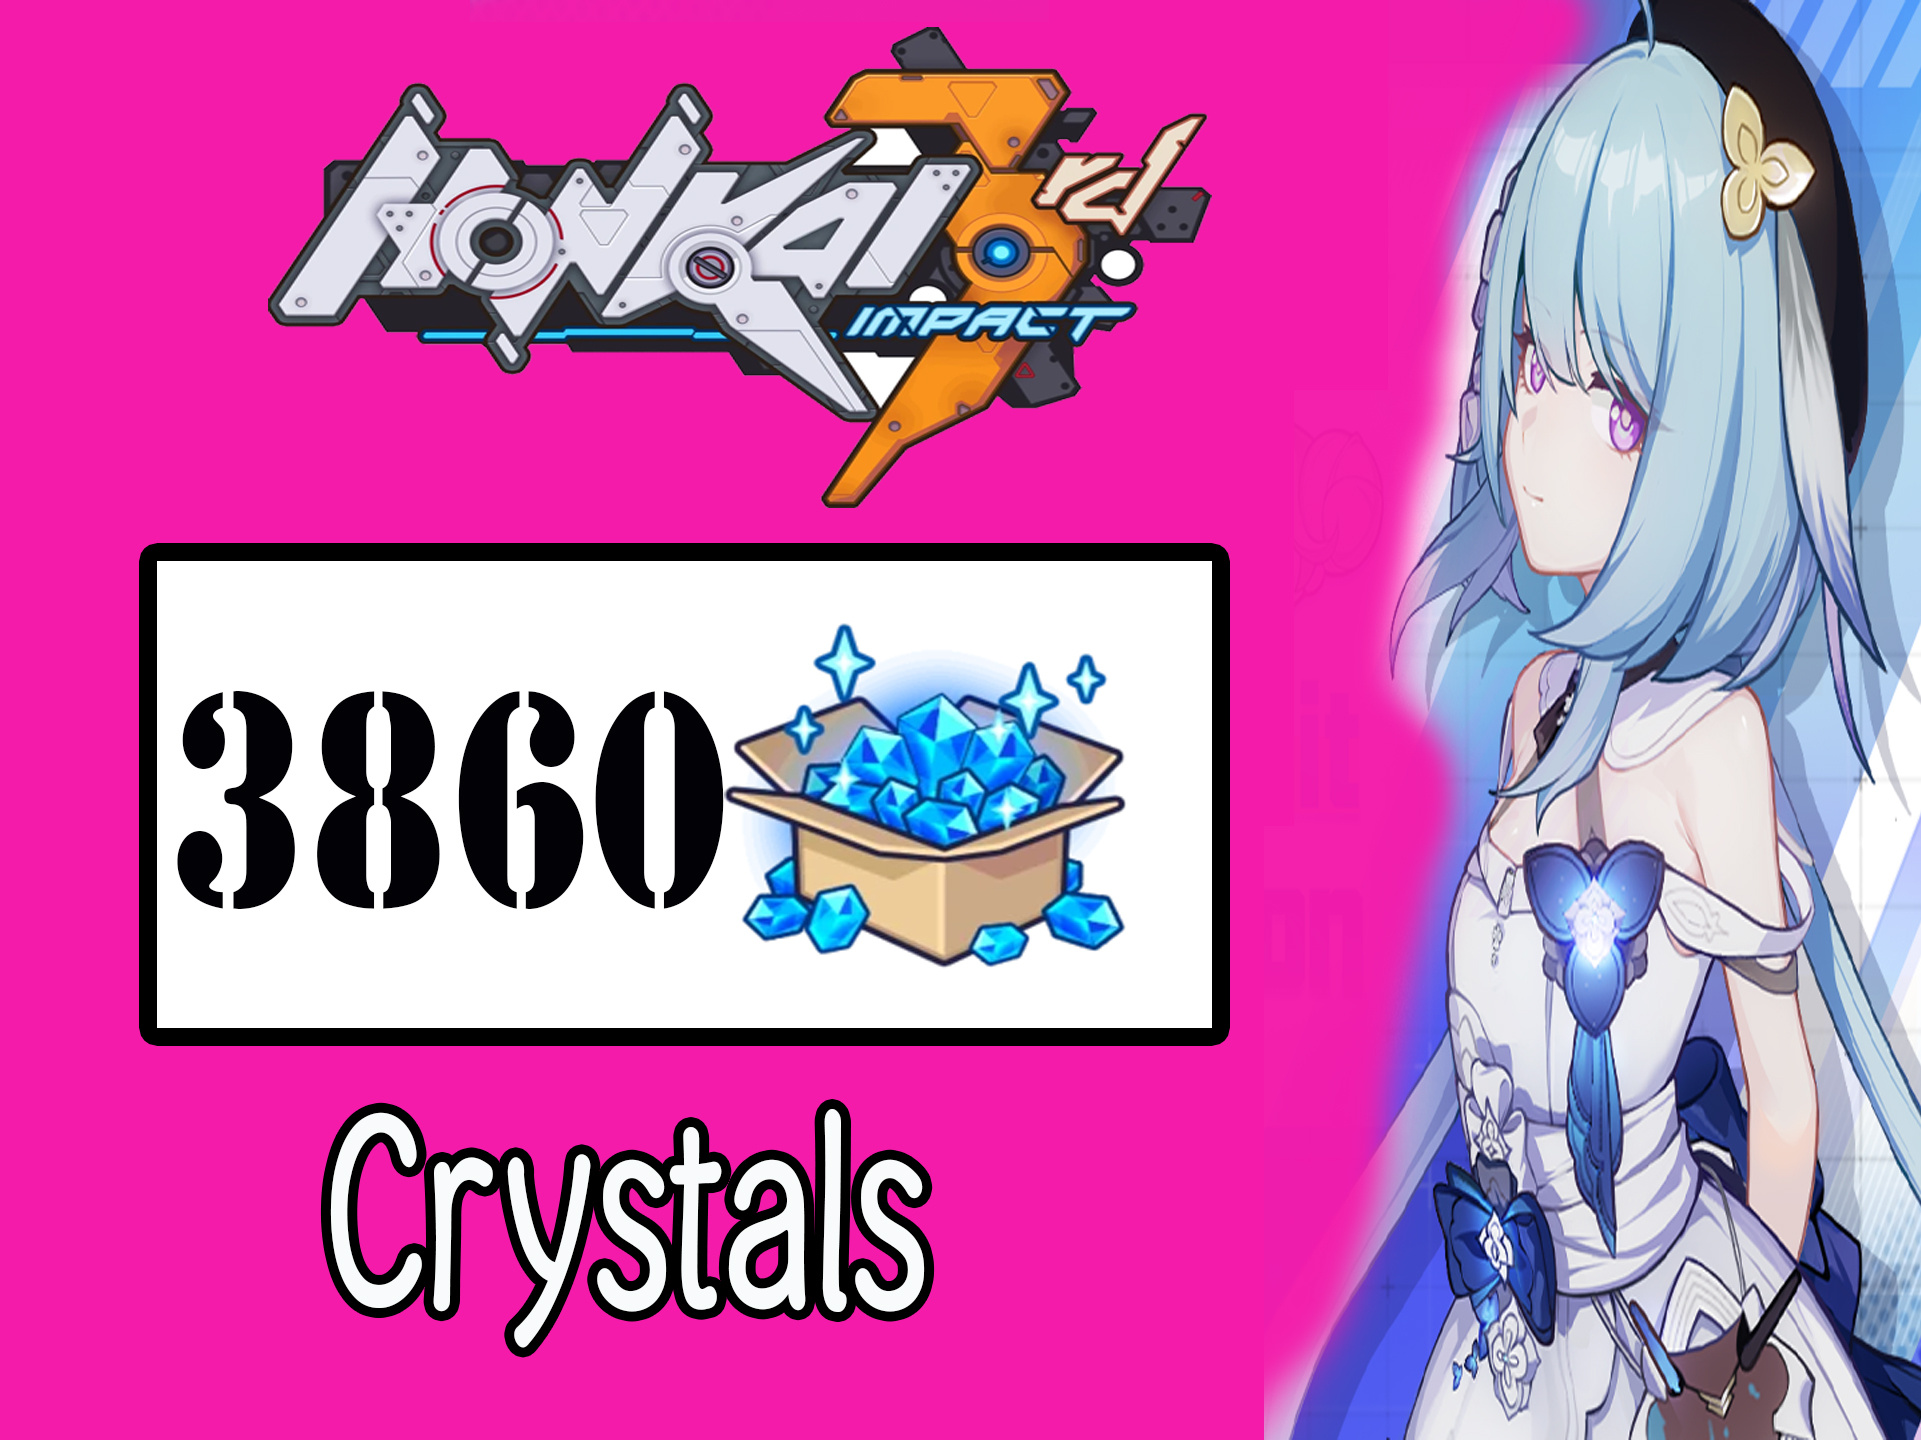 honkai-impact-3-3860-crystals-save-10